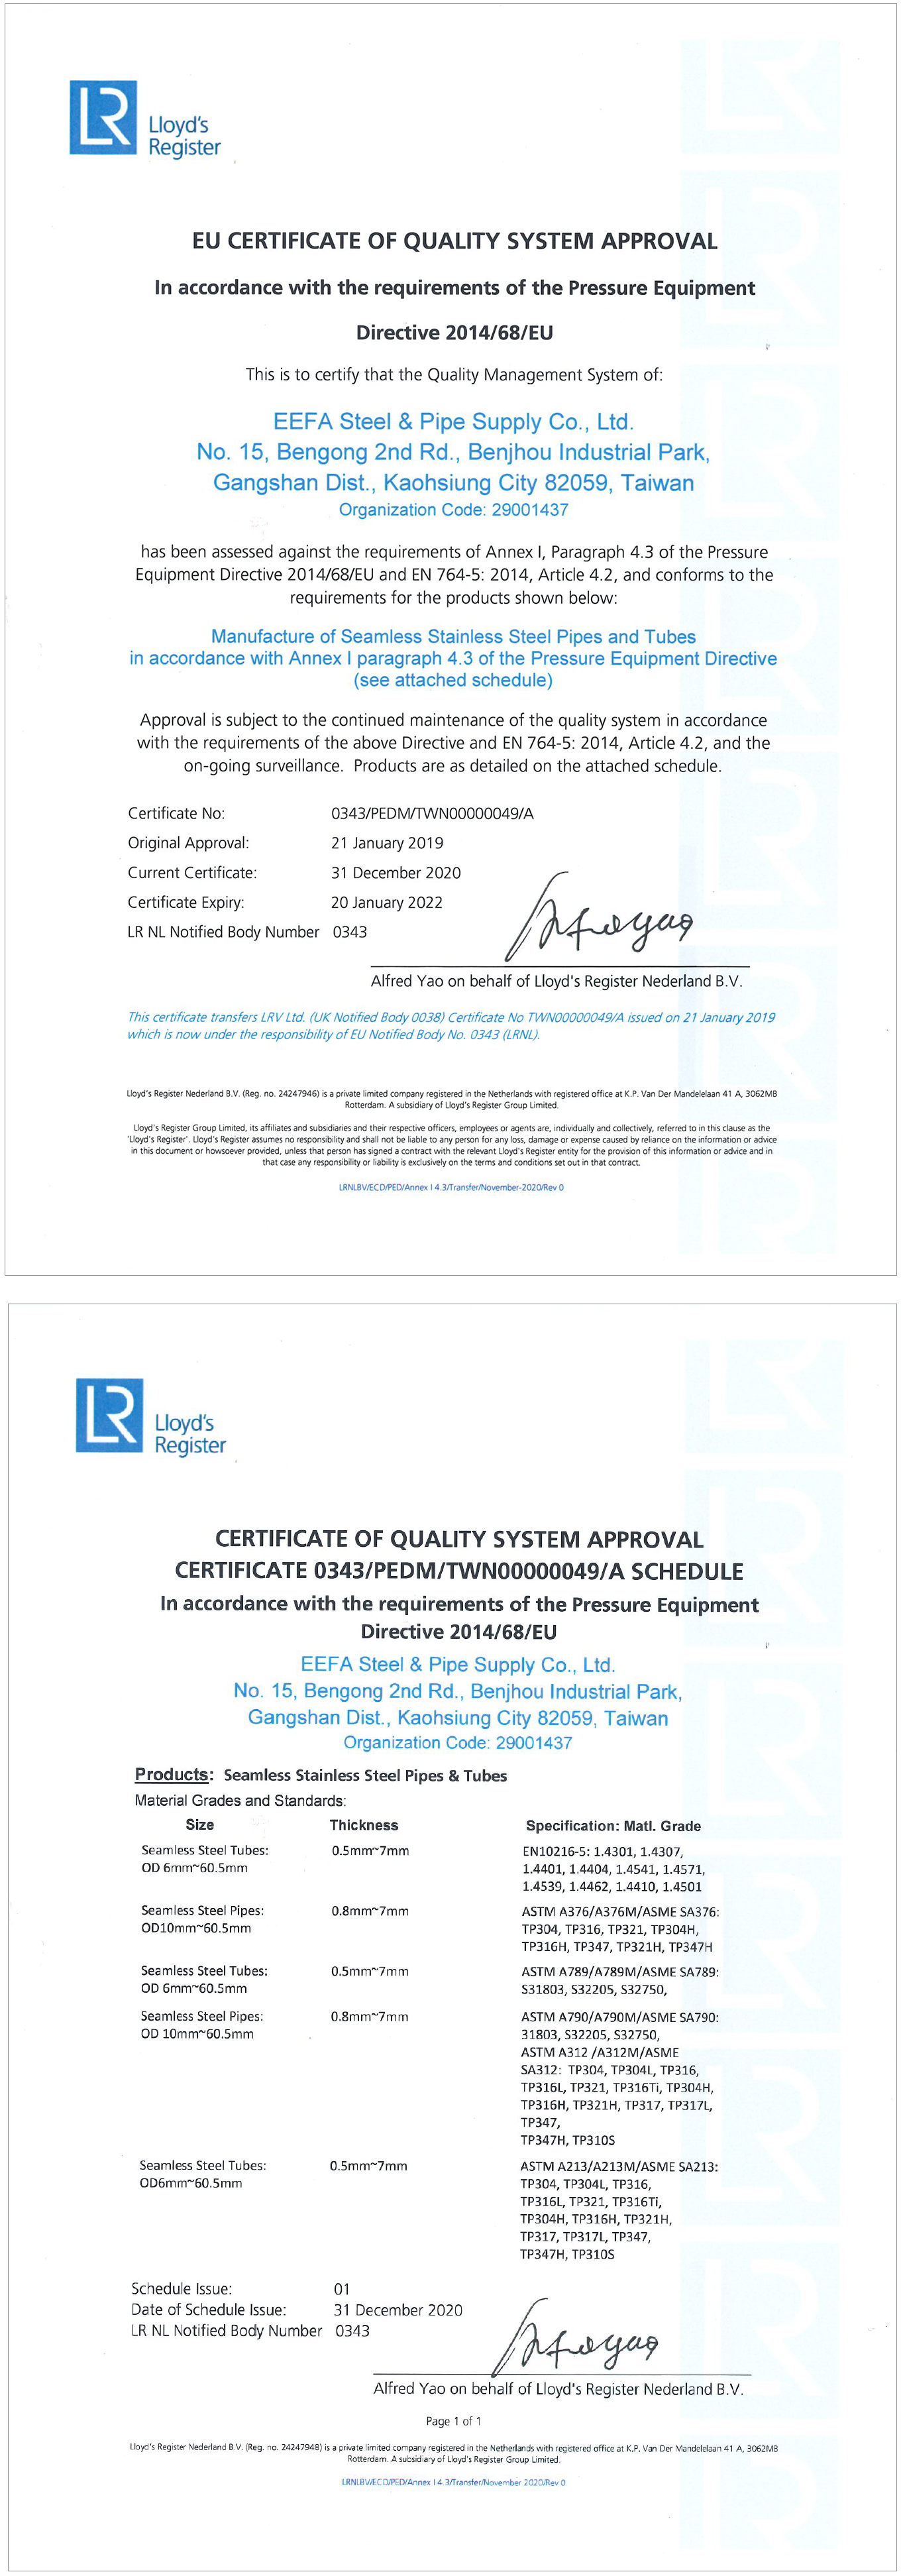 除了獲得英商勞氏英國ISO 9001:2015認證，怡發鋼鐵製程亦榮獲英商勞氏歐盟西班牙ENAC的ISO 9001:2015認證 In addition to ISO 9001:2015 certified by Lloyd’s Register in the UK, EEFA’s seamless stainless steel tube and pipe manufacturing process conforms to ISO 9001:2015 (certified by Lloyd’s Register España/ENAC in Spain, EU)